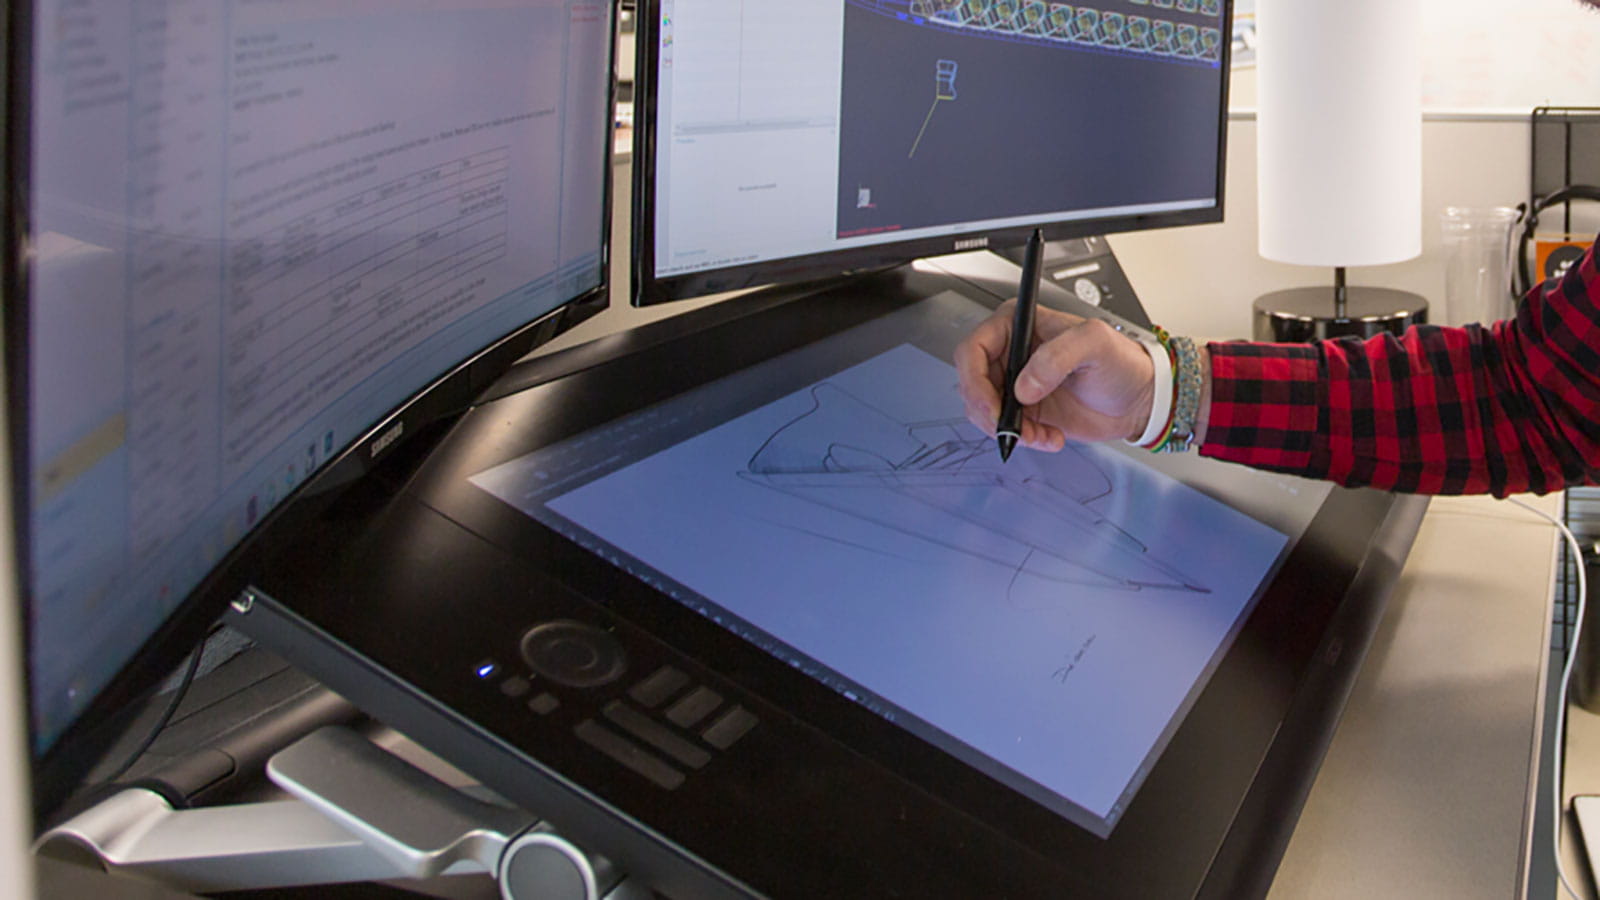 An illustrator works on a large digital tablet